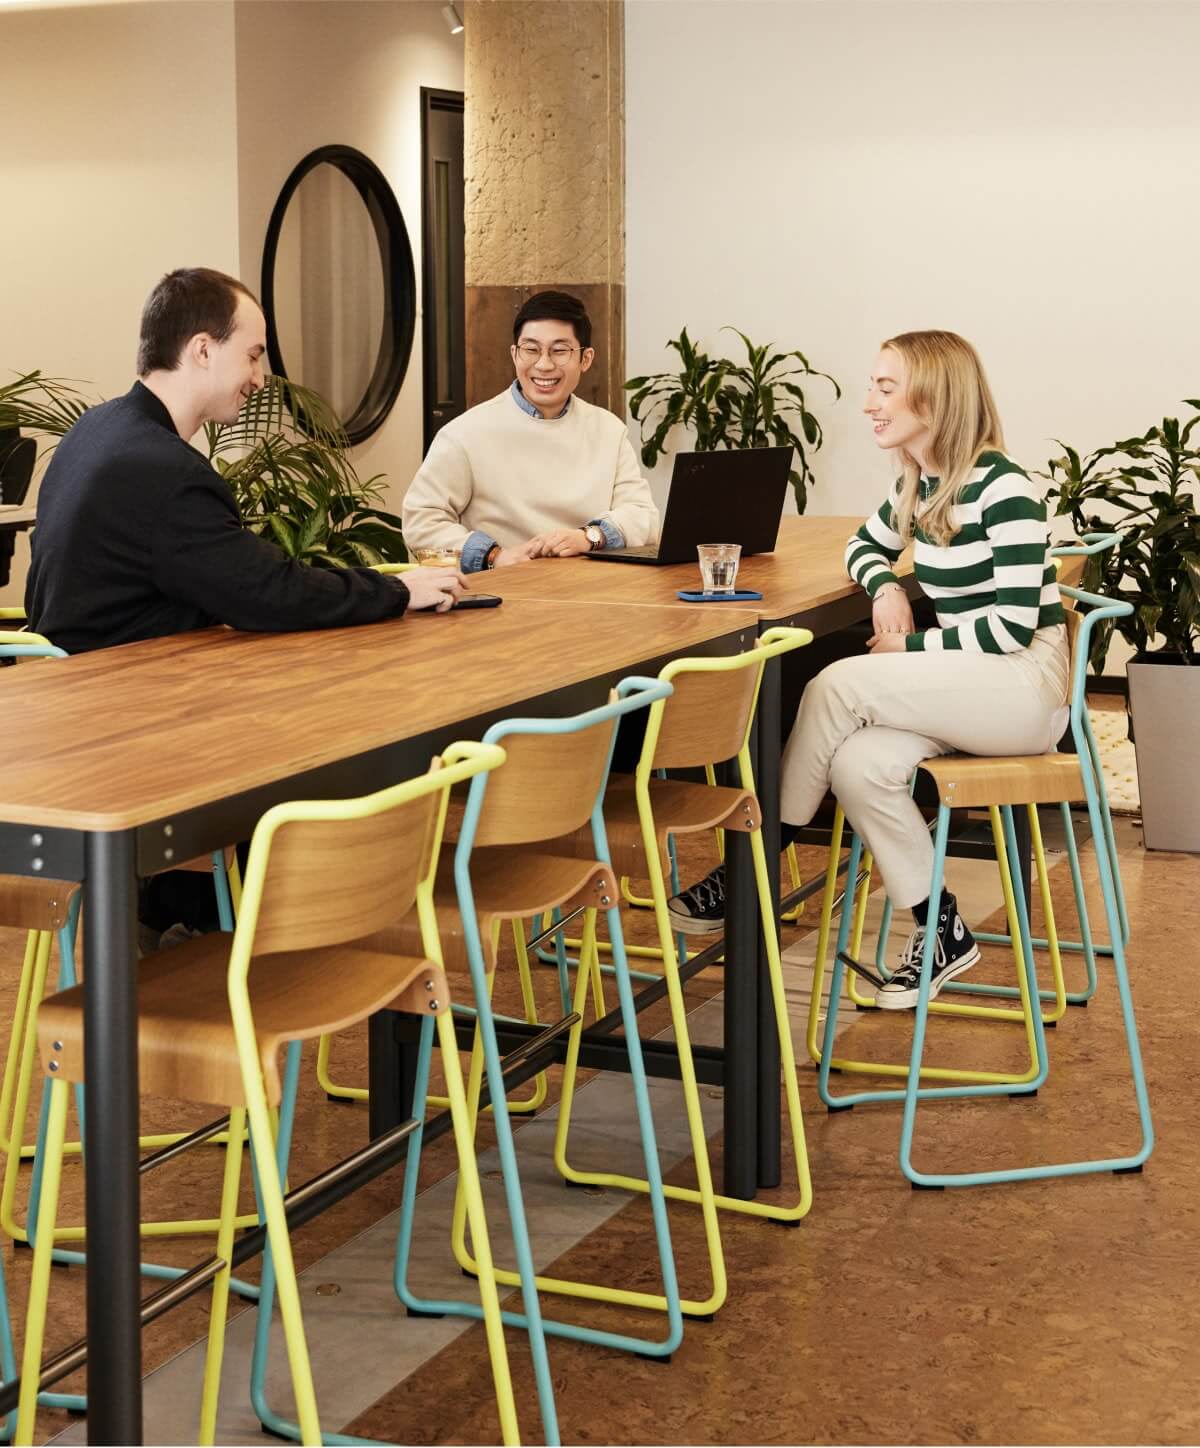 Trois employés de Workleap en train de collaborer dans un environnement moderne et informel, favorisant le travail d'équipe et l'innovation